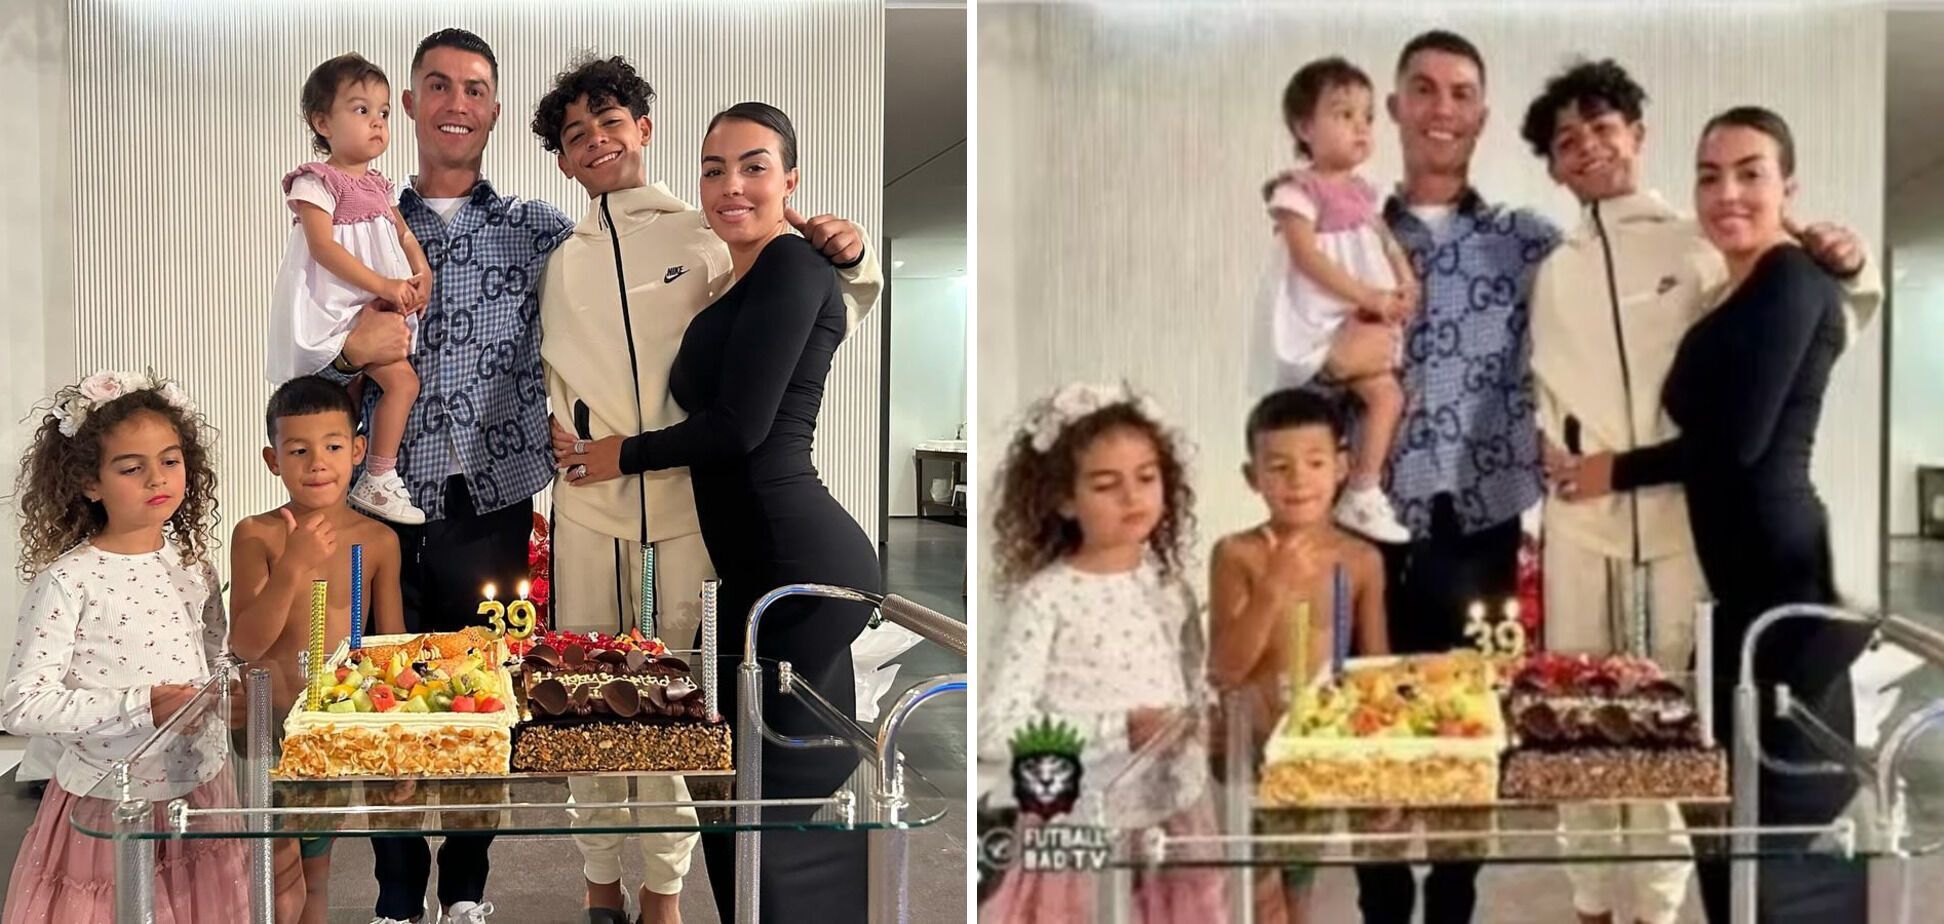 Иранская газета "отрезала" пышные ягодицы невесты Криштиану Роналду на семейном фото. Фото до и после